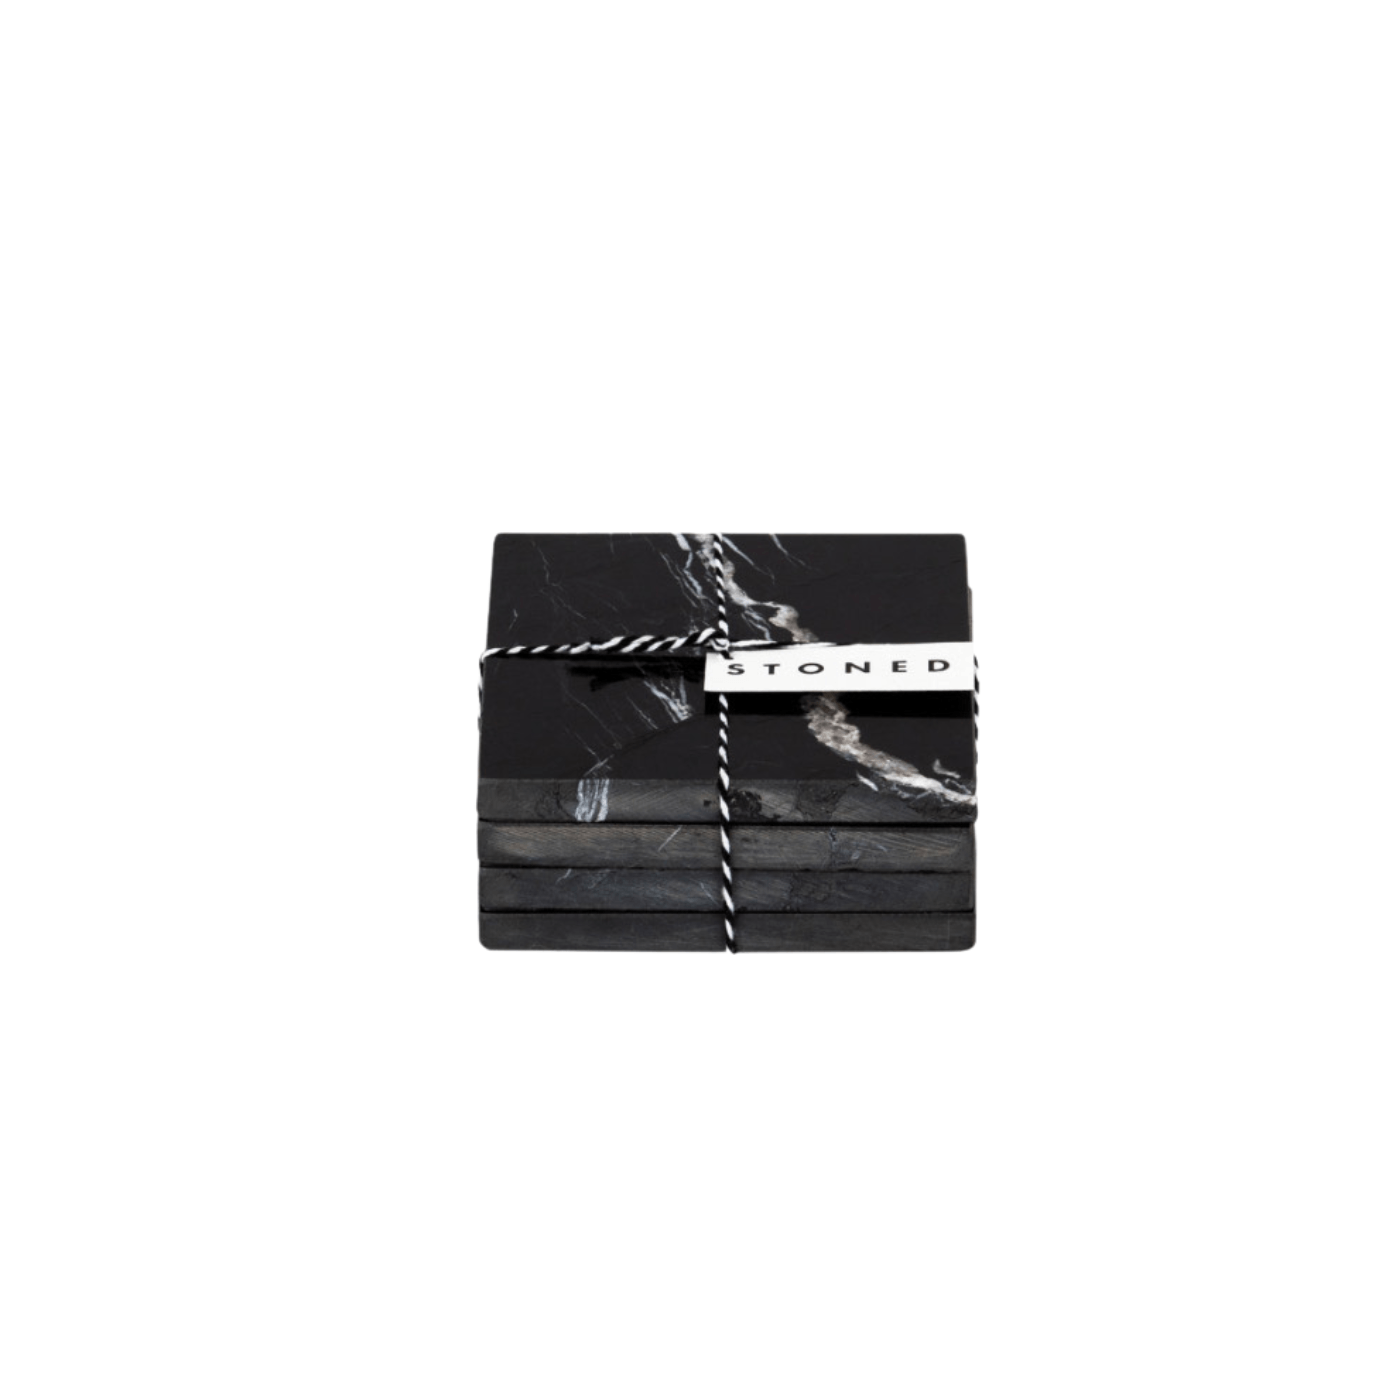 Stoned Marble Marmor-Untersetzer Set mit 4 Stück, Quadratisch wahlweise in Schwarz poliert oder Weiß matt ca. L10xB10xH1cm - Bitangel RENOVATE & FURNISH HOMES GmbH